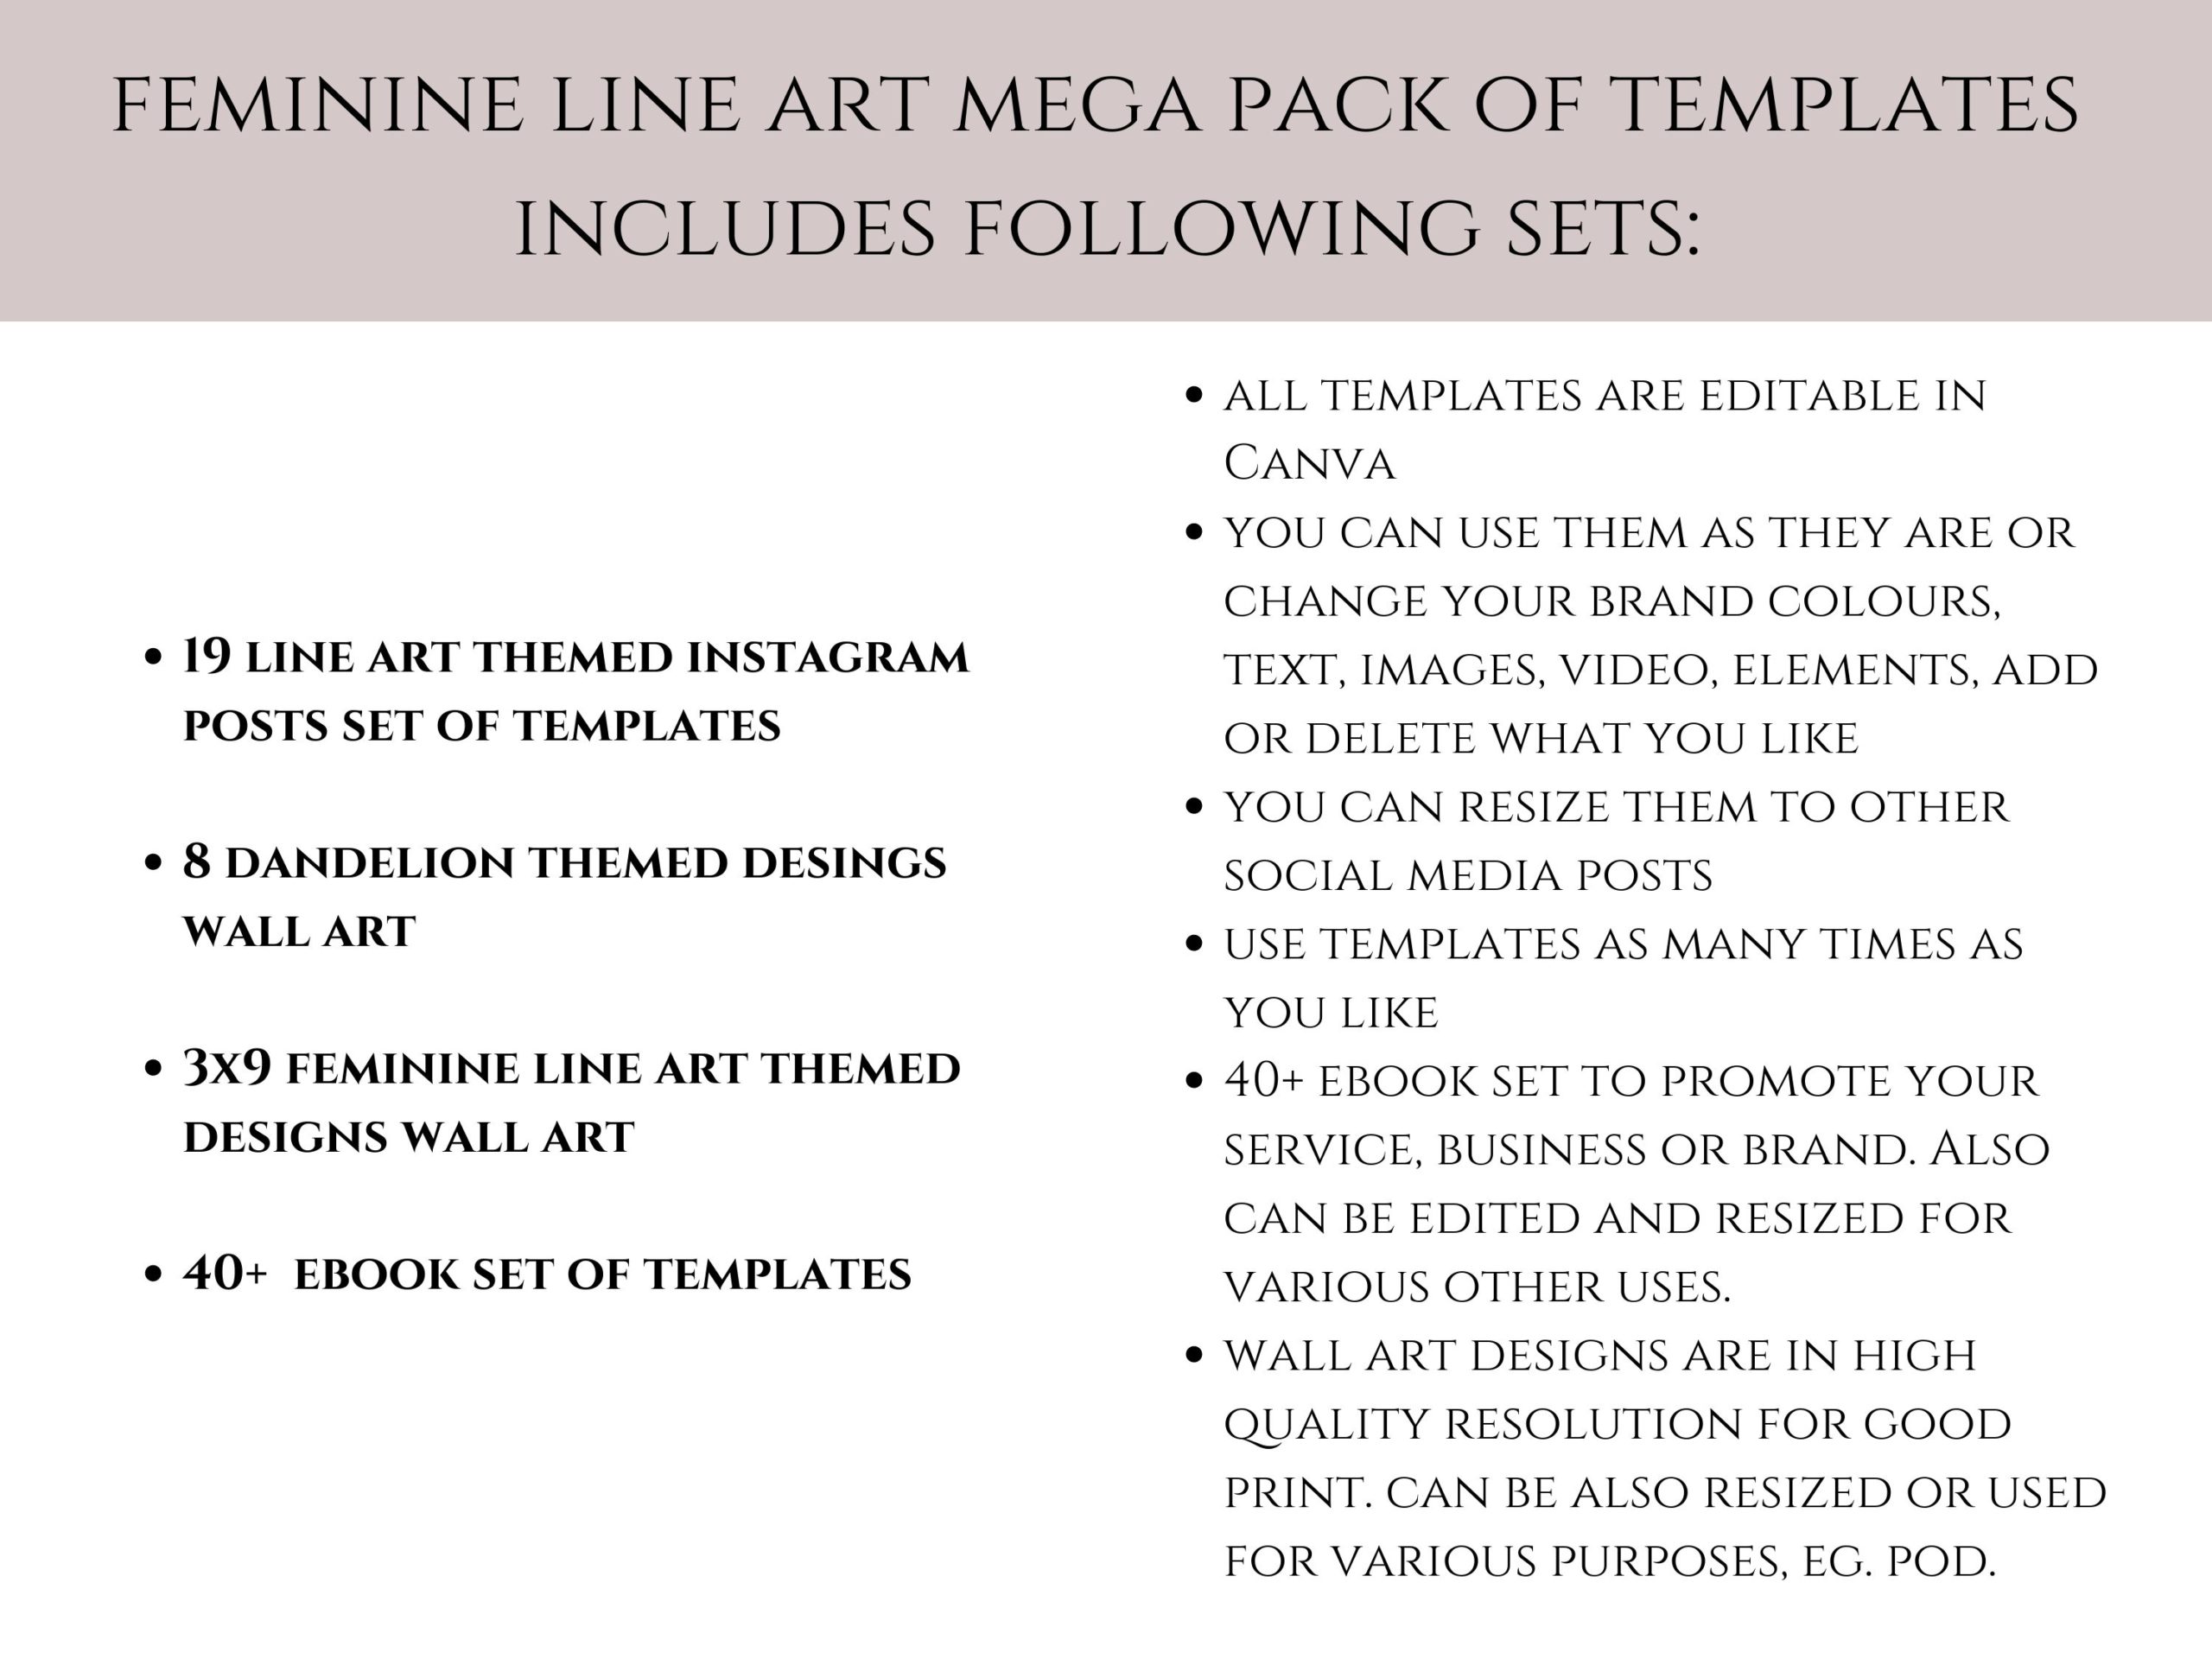 Feminine Line art mega pack